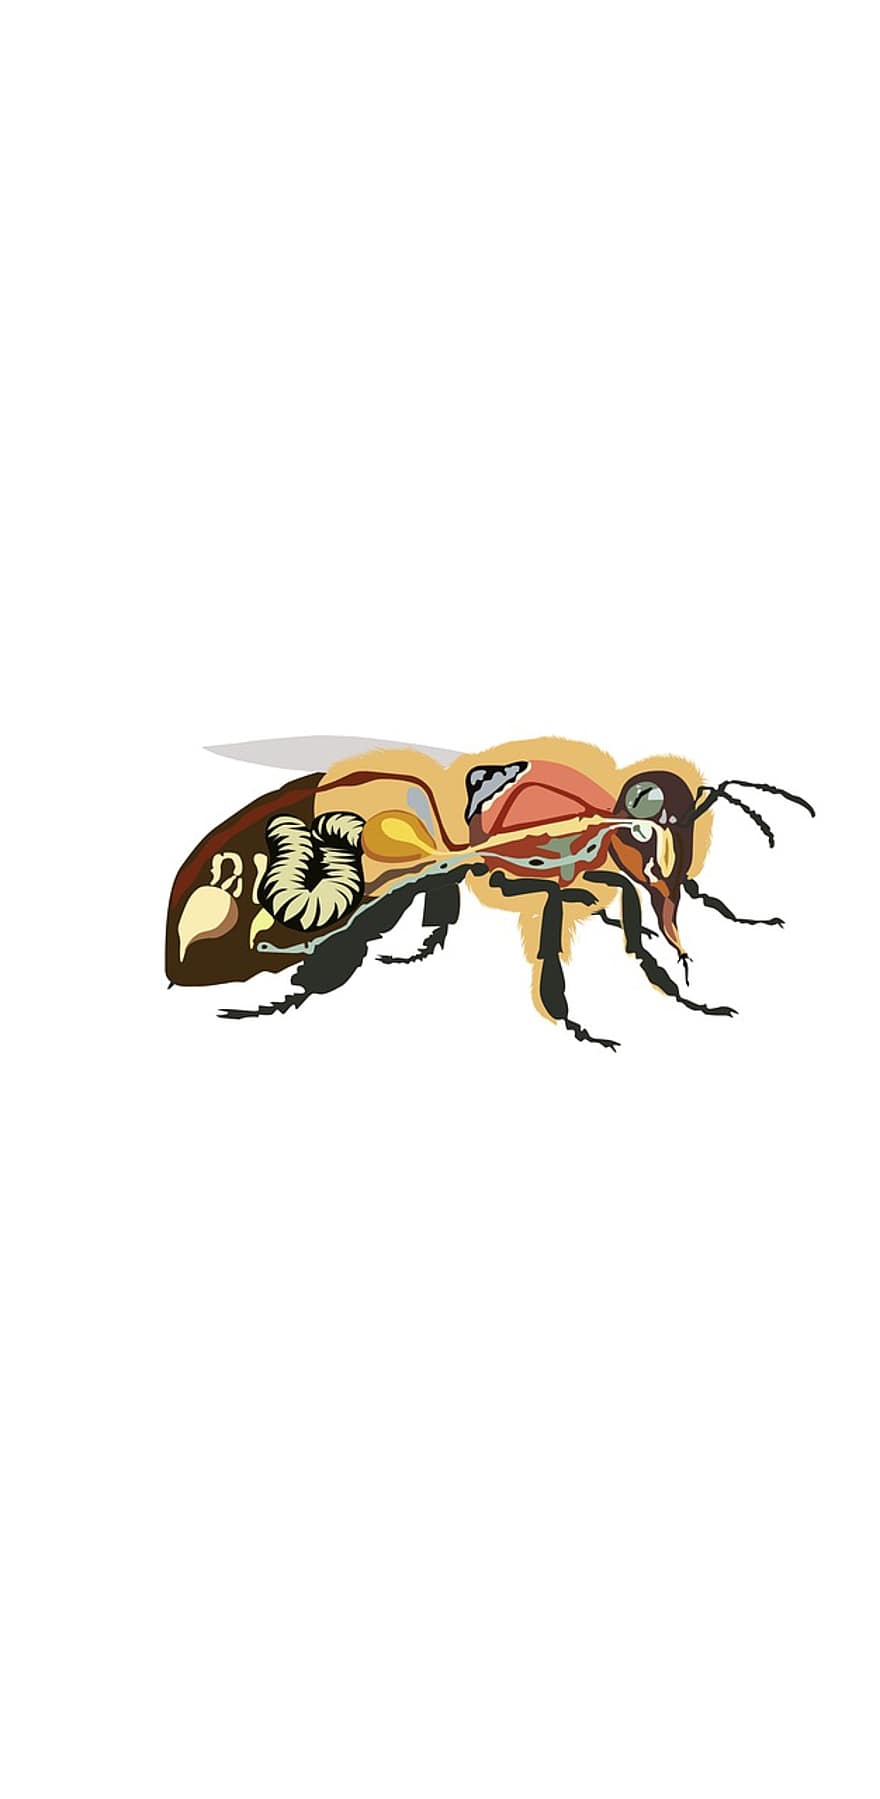 anatomia de les abelles, abella, insecte, mel, mel d'abella, anatomia, dibuix, il·lustració, formiga, Vespa, vector